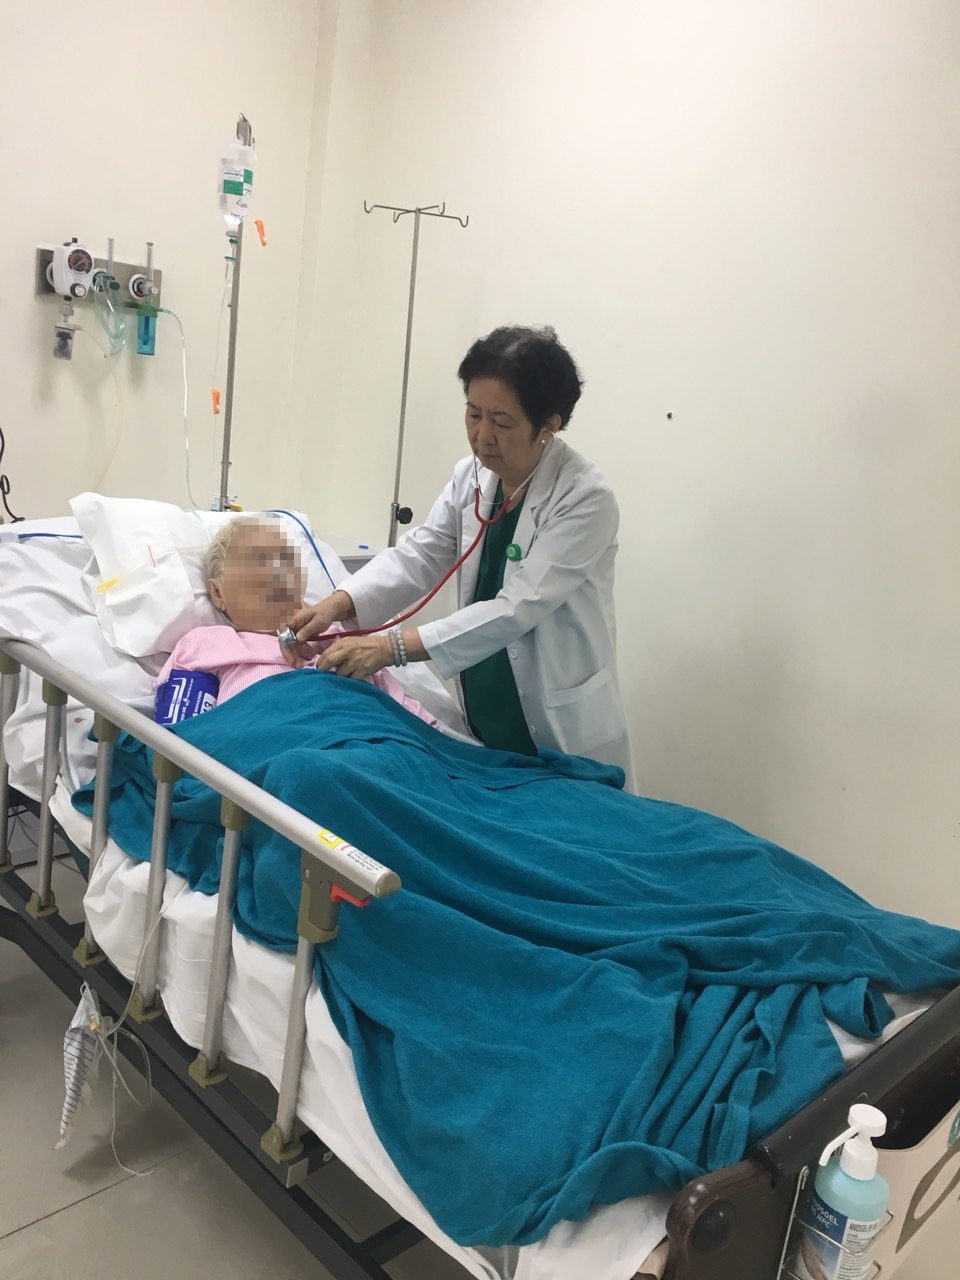  Bác sĩ Lê Kim Hà sửa áo, đắp mền cho bệnh nhân trong lúc khám bệnh